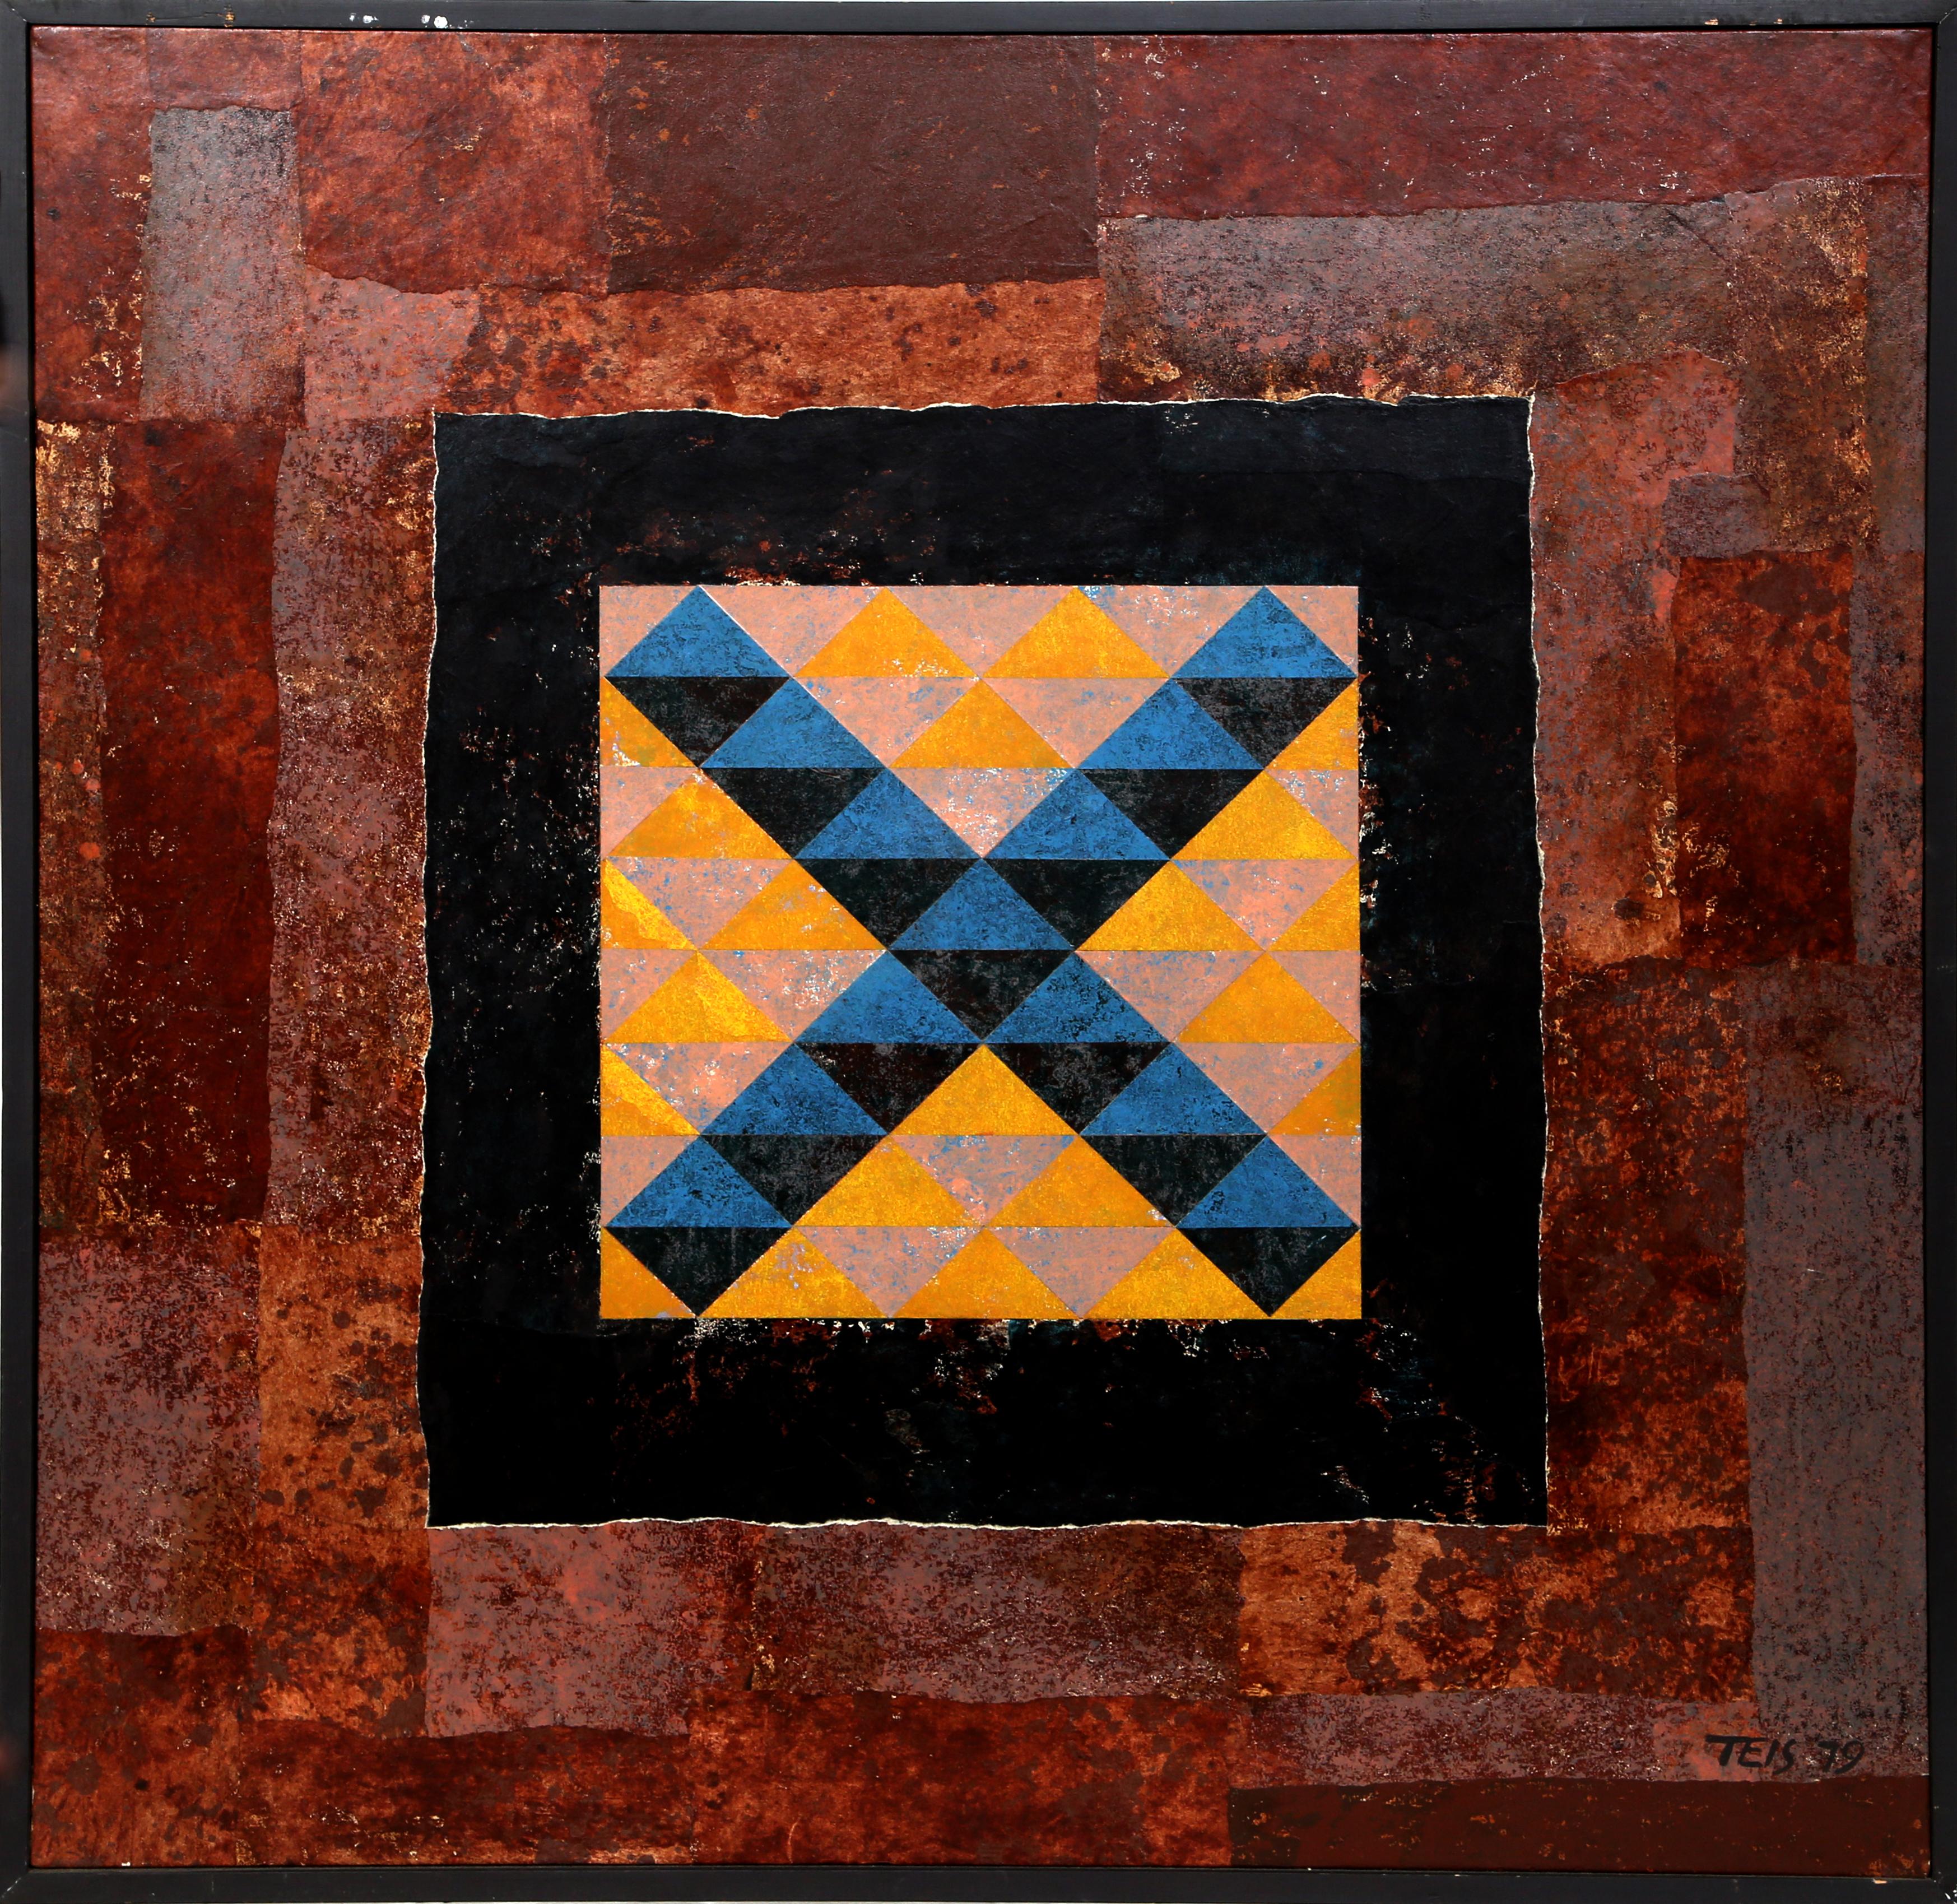 Artiste : Dan Teis, américain (1925 - 2002)
Titre : X bleu sur un résumé
Année : 1979
Moyen : Acrylique et collage sur toile, signé à droite.
Taille : 40 in. x 40 in. (101,6 cm x 101,6 cm)
Taille du cadre : 41.5 x 41.5 pouces